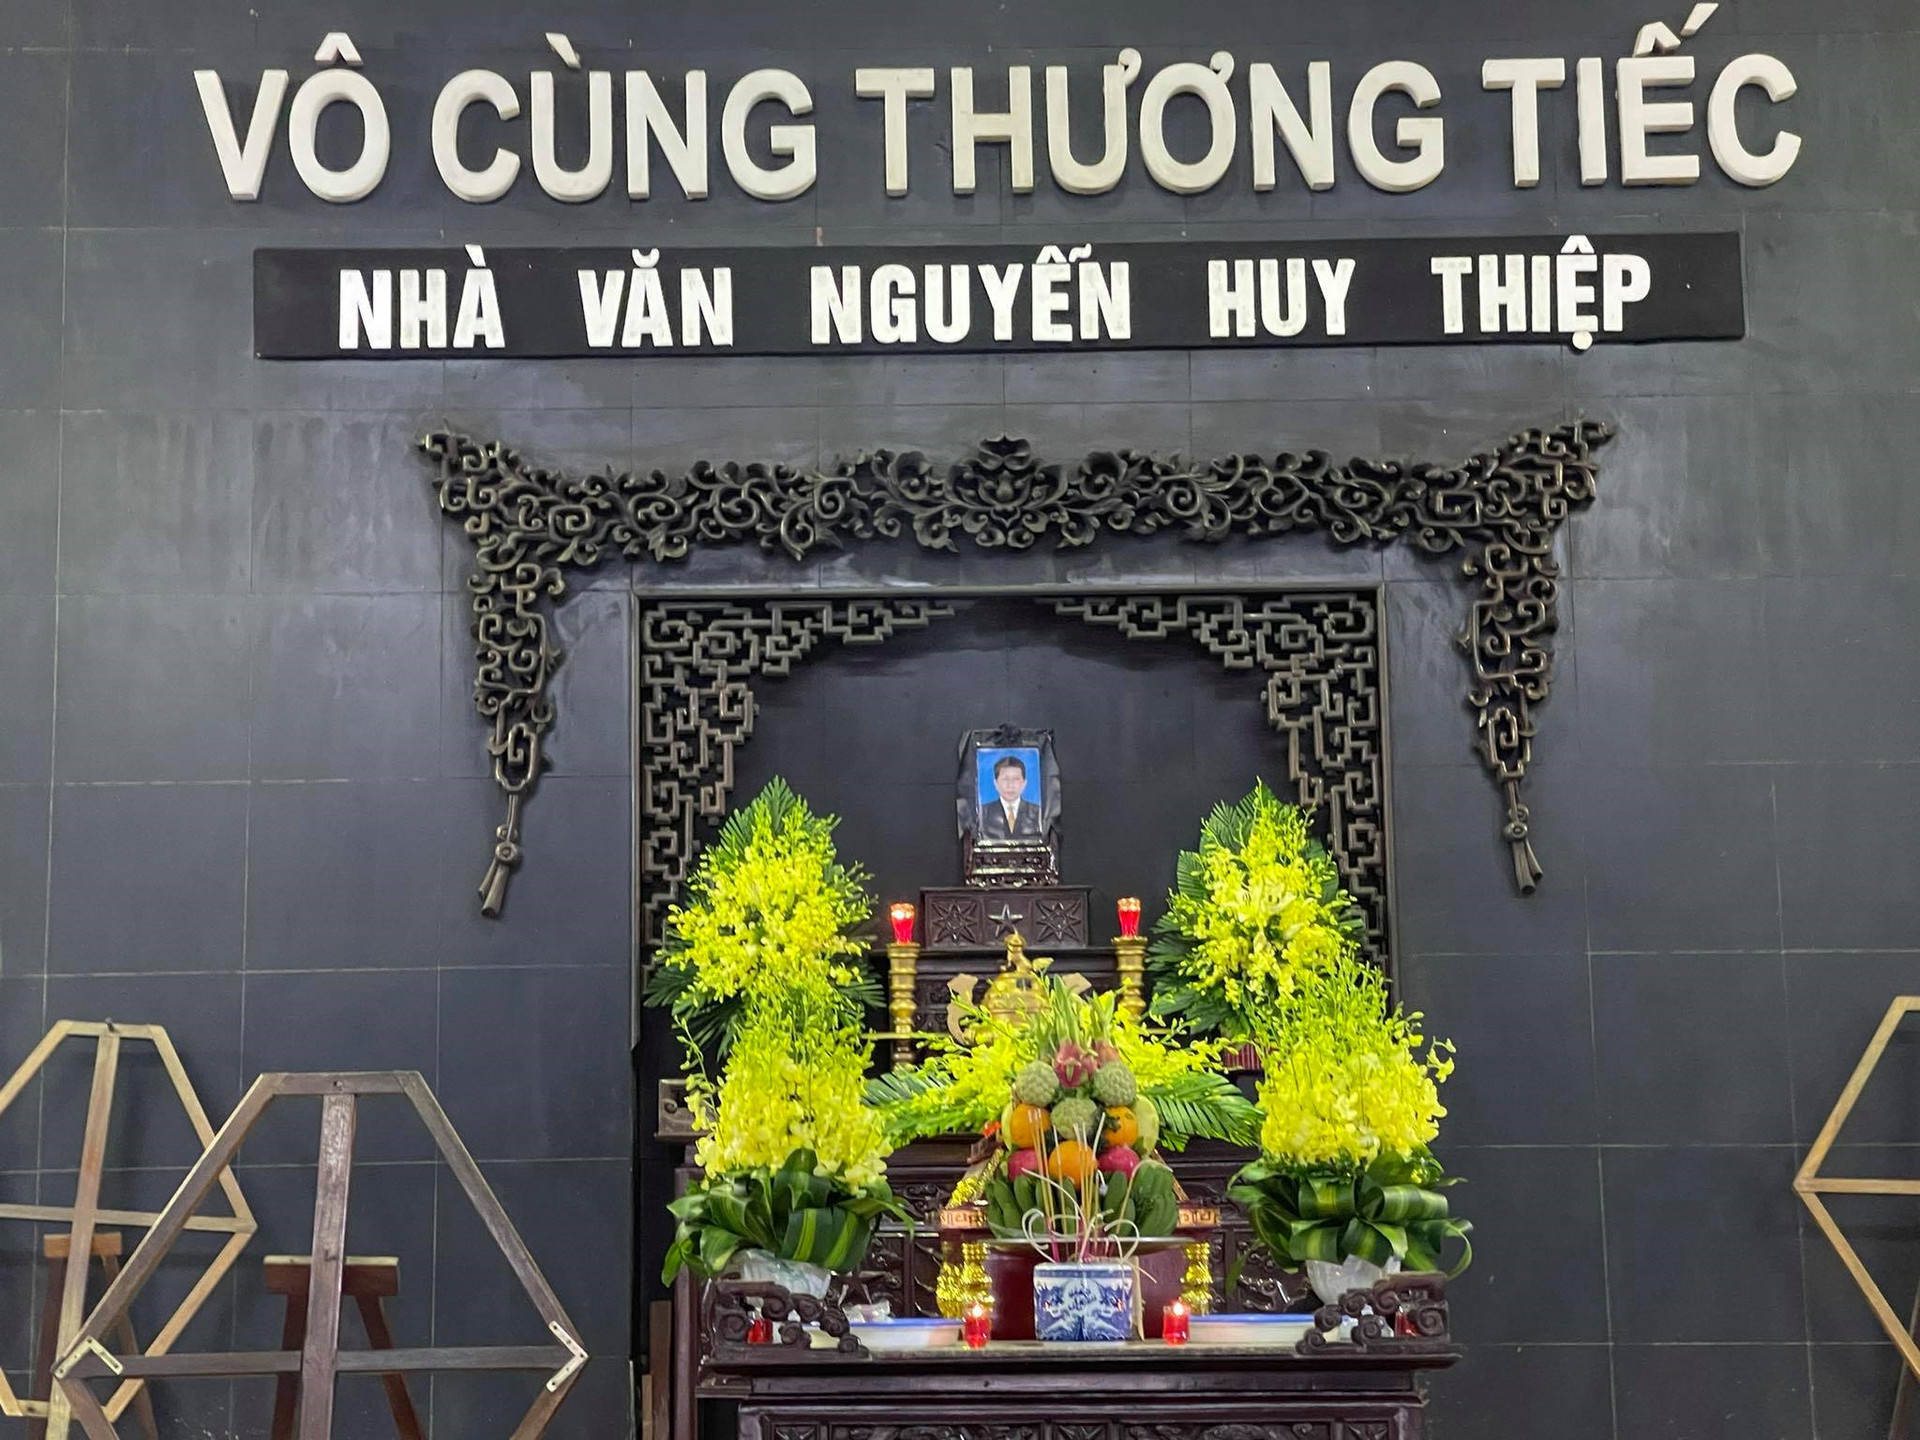 Nhiều văn nghệ sĩ lớn tiễn đưa nhà văn Nguyễn Huy Thiệp - 1